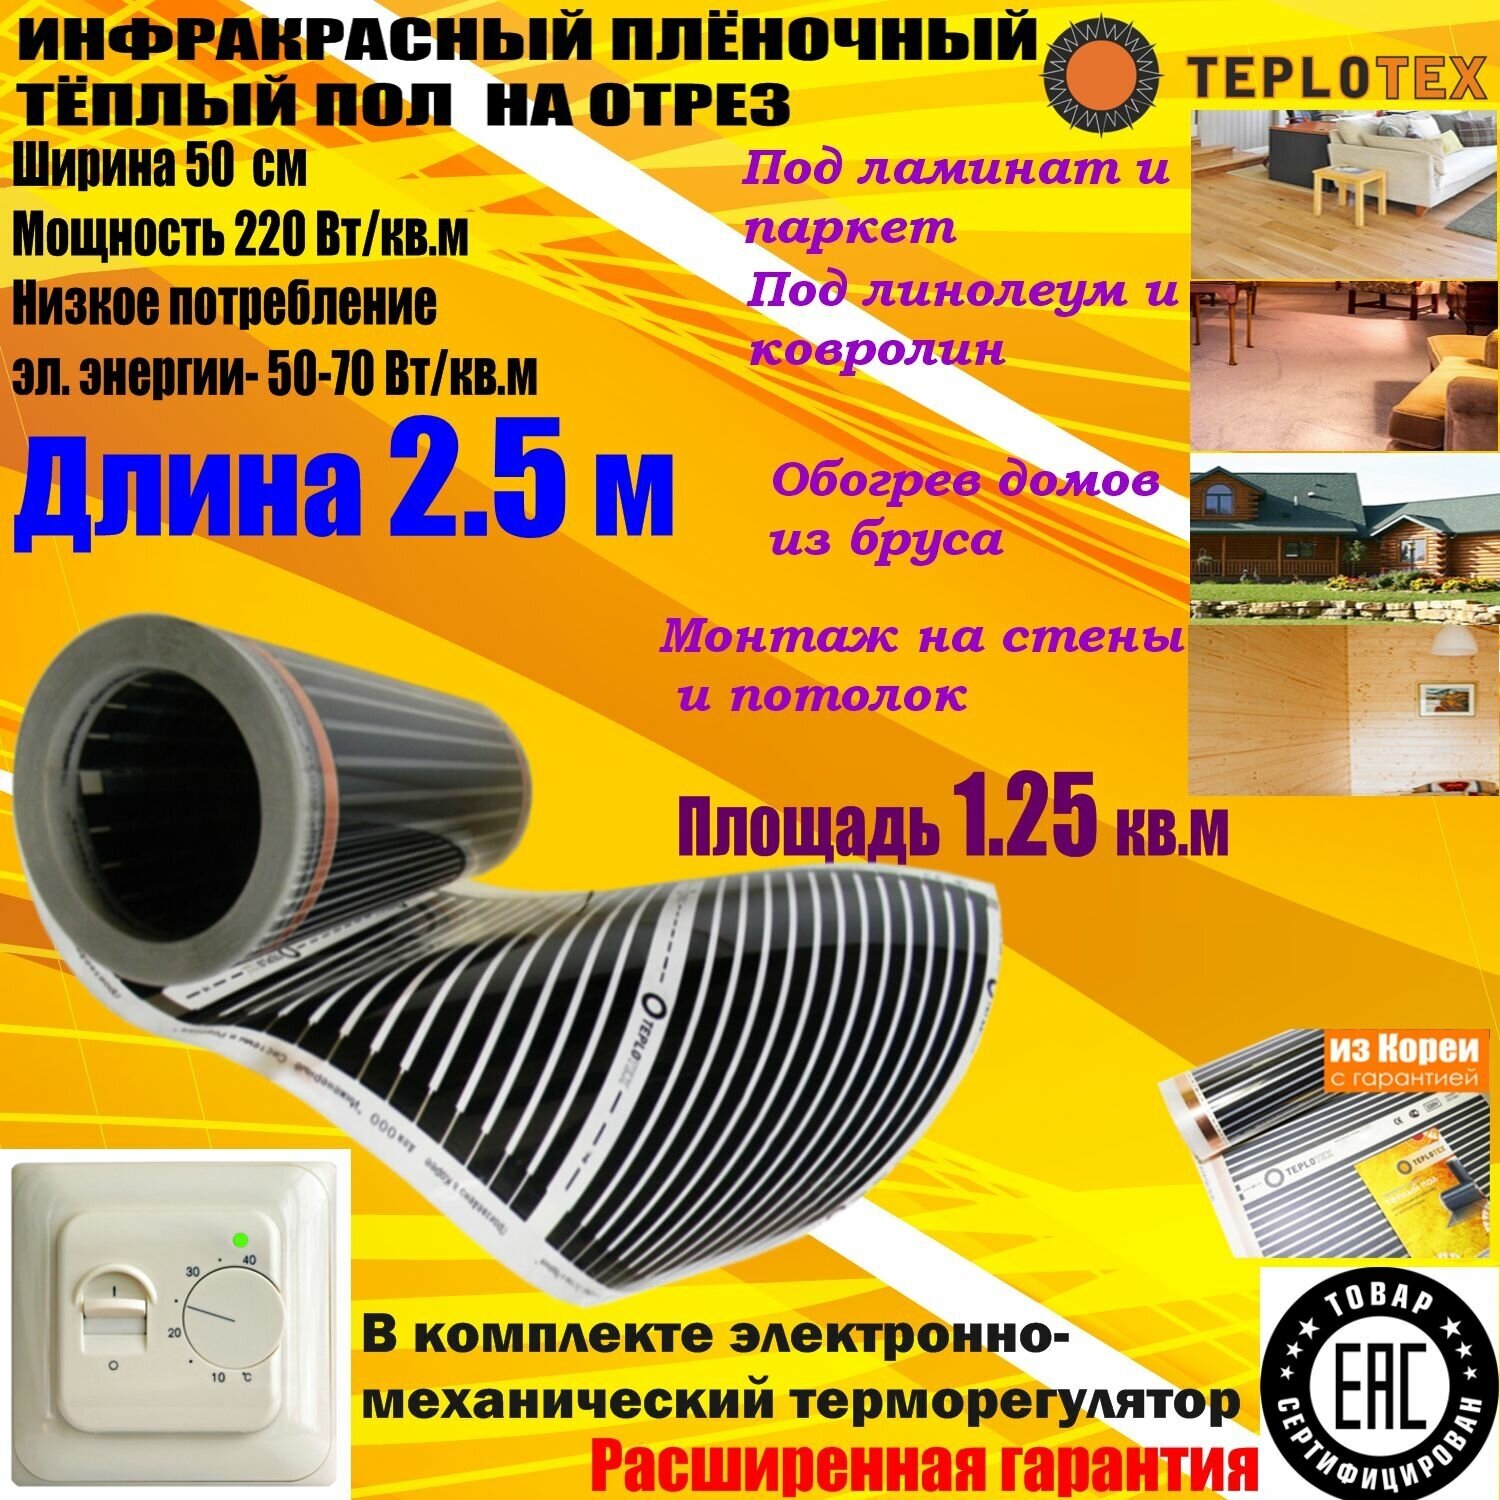 Комплект:Инфракрасный тёплый пол на отрез:TEPLOTEX-длина 2.5 м/площадь обогрева 1.25 кв.м/мощность 275 Вт+Терморегулятор RTC 70 - фотография № 1